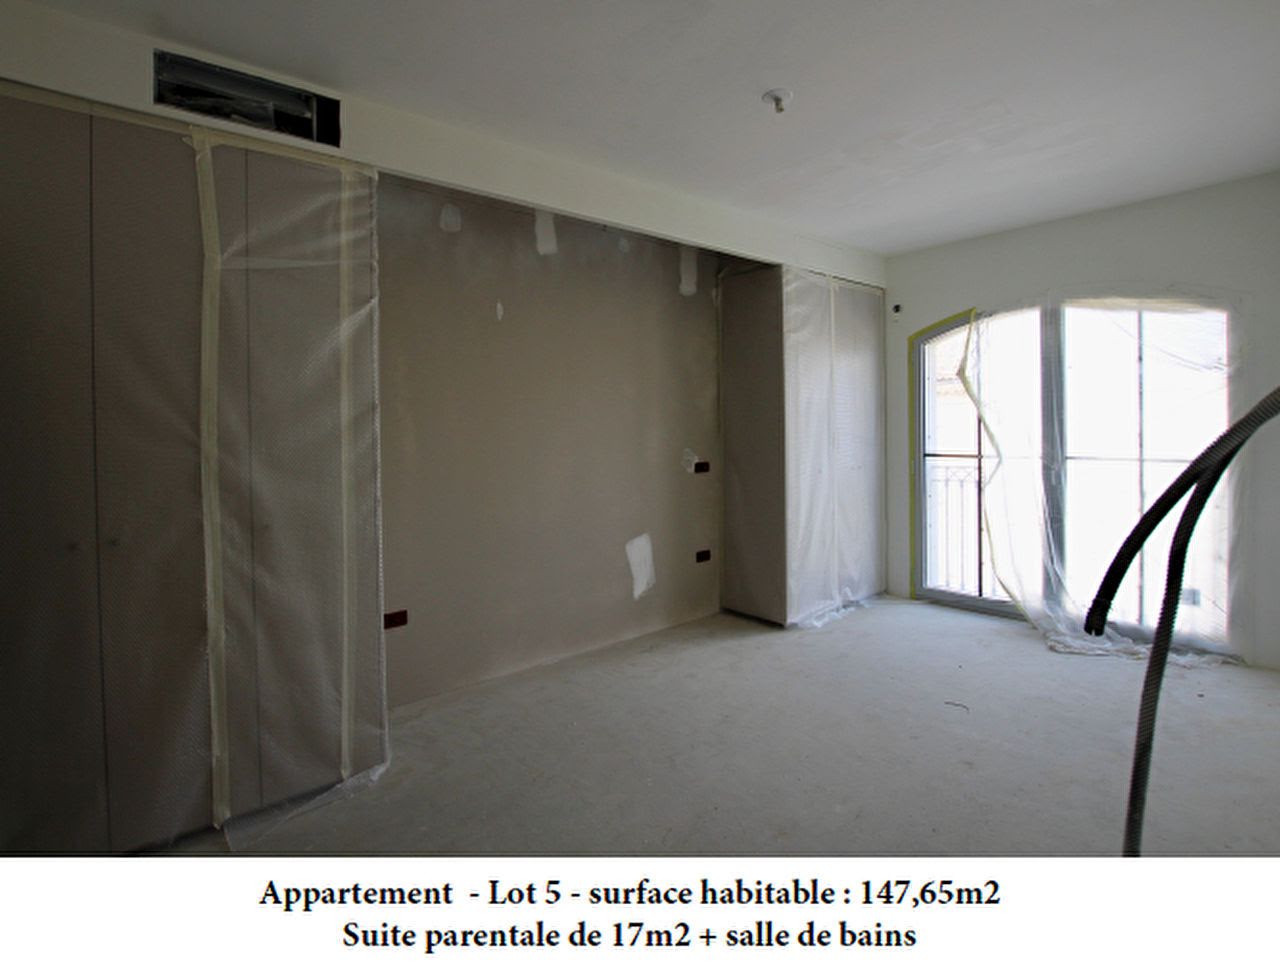 Vente appartement 4 pièces 147,65 m2